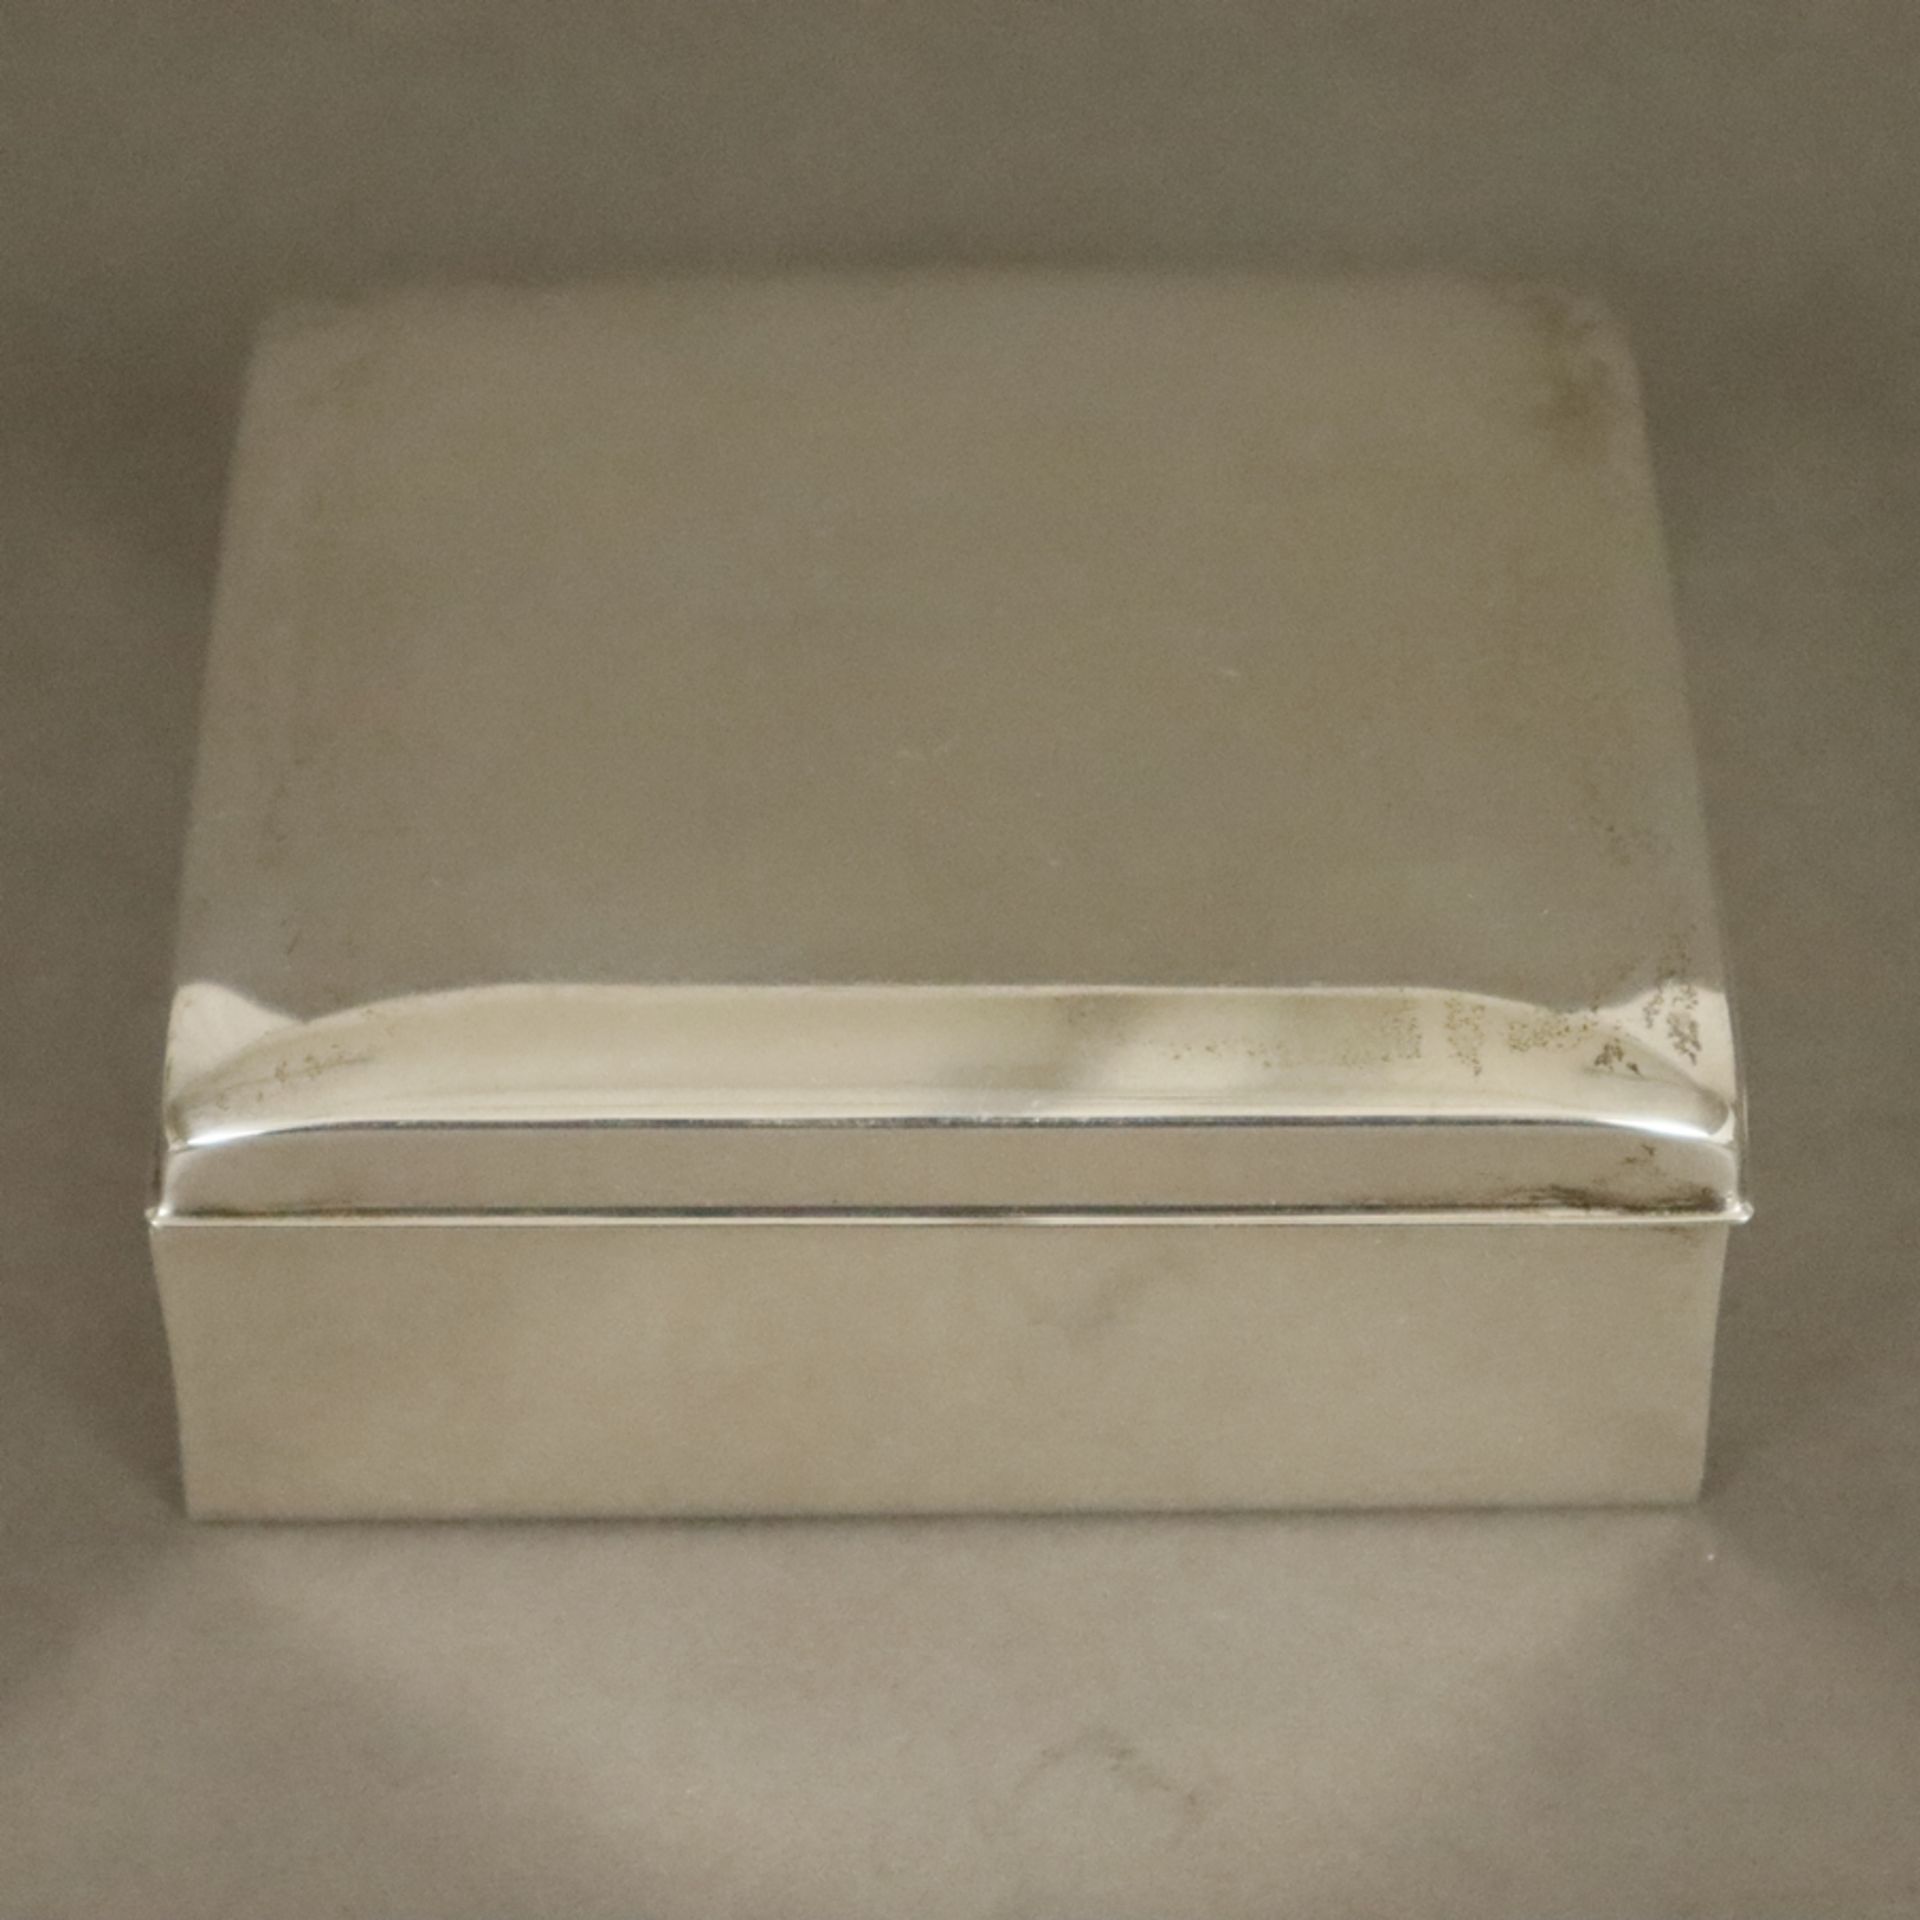 Zigarettendose - Poole USA, 925er Sterling Silber, schlichte rechteckige Form, leicht gewölbter Sch